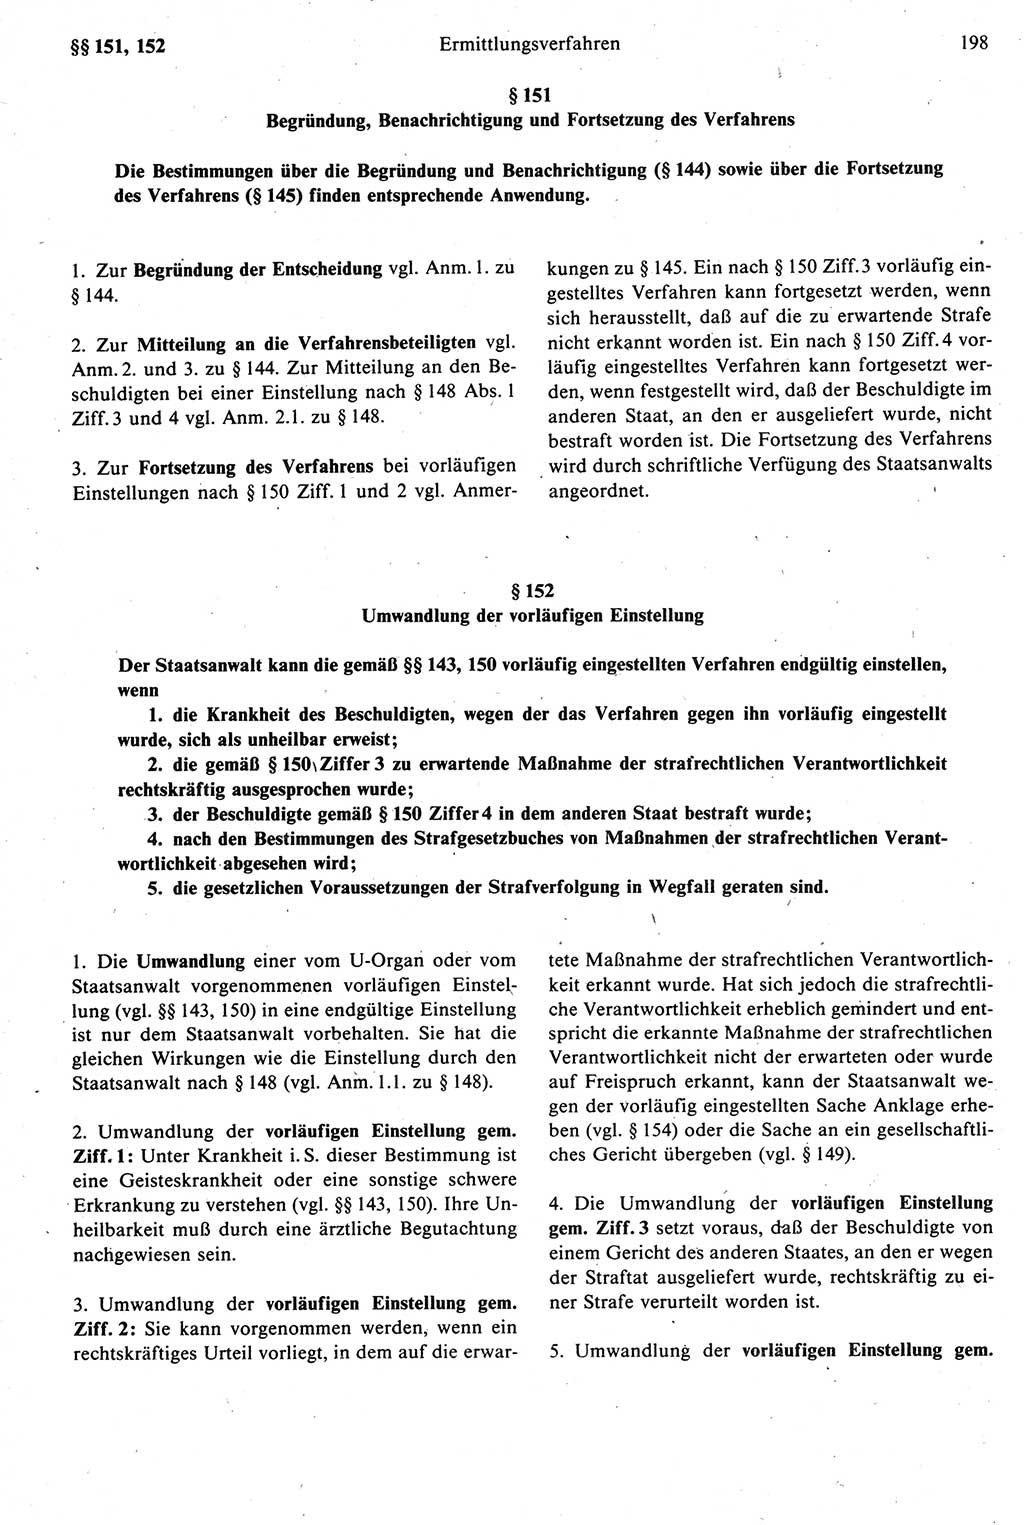 Strafprozeßrecht der DDR [Deutsche Demokratische Republik], Kommentar zur Strafprozeßordnung (StPO) 1987, Seite 198 (Strafprozeßr. DDR Komm. StPO 1987, S. 198)